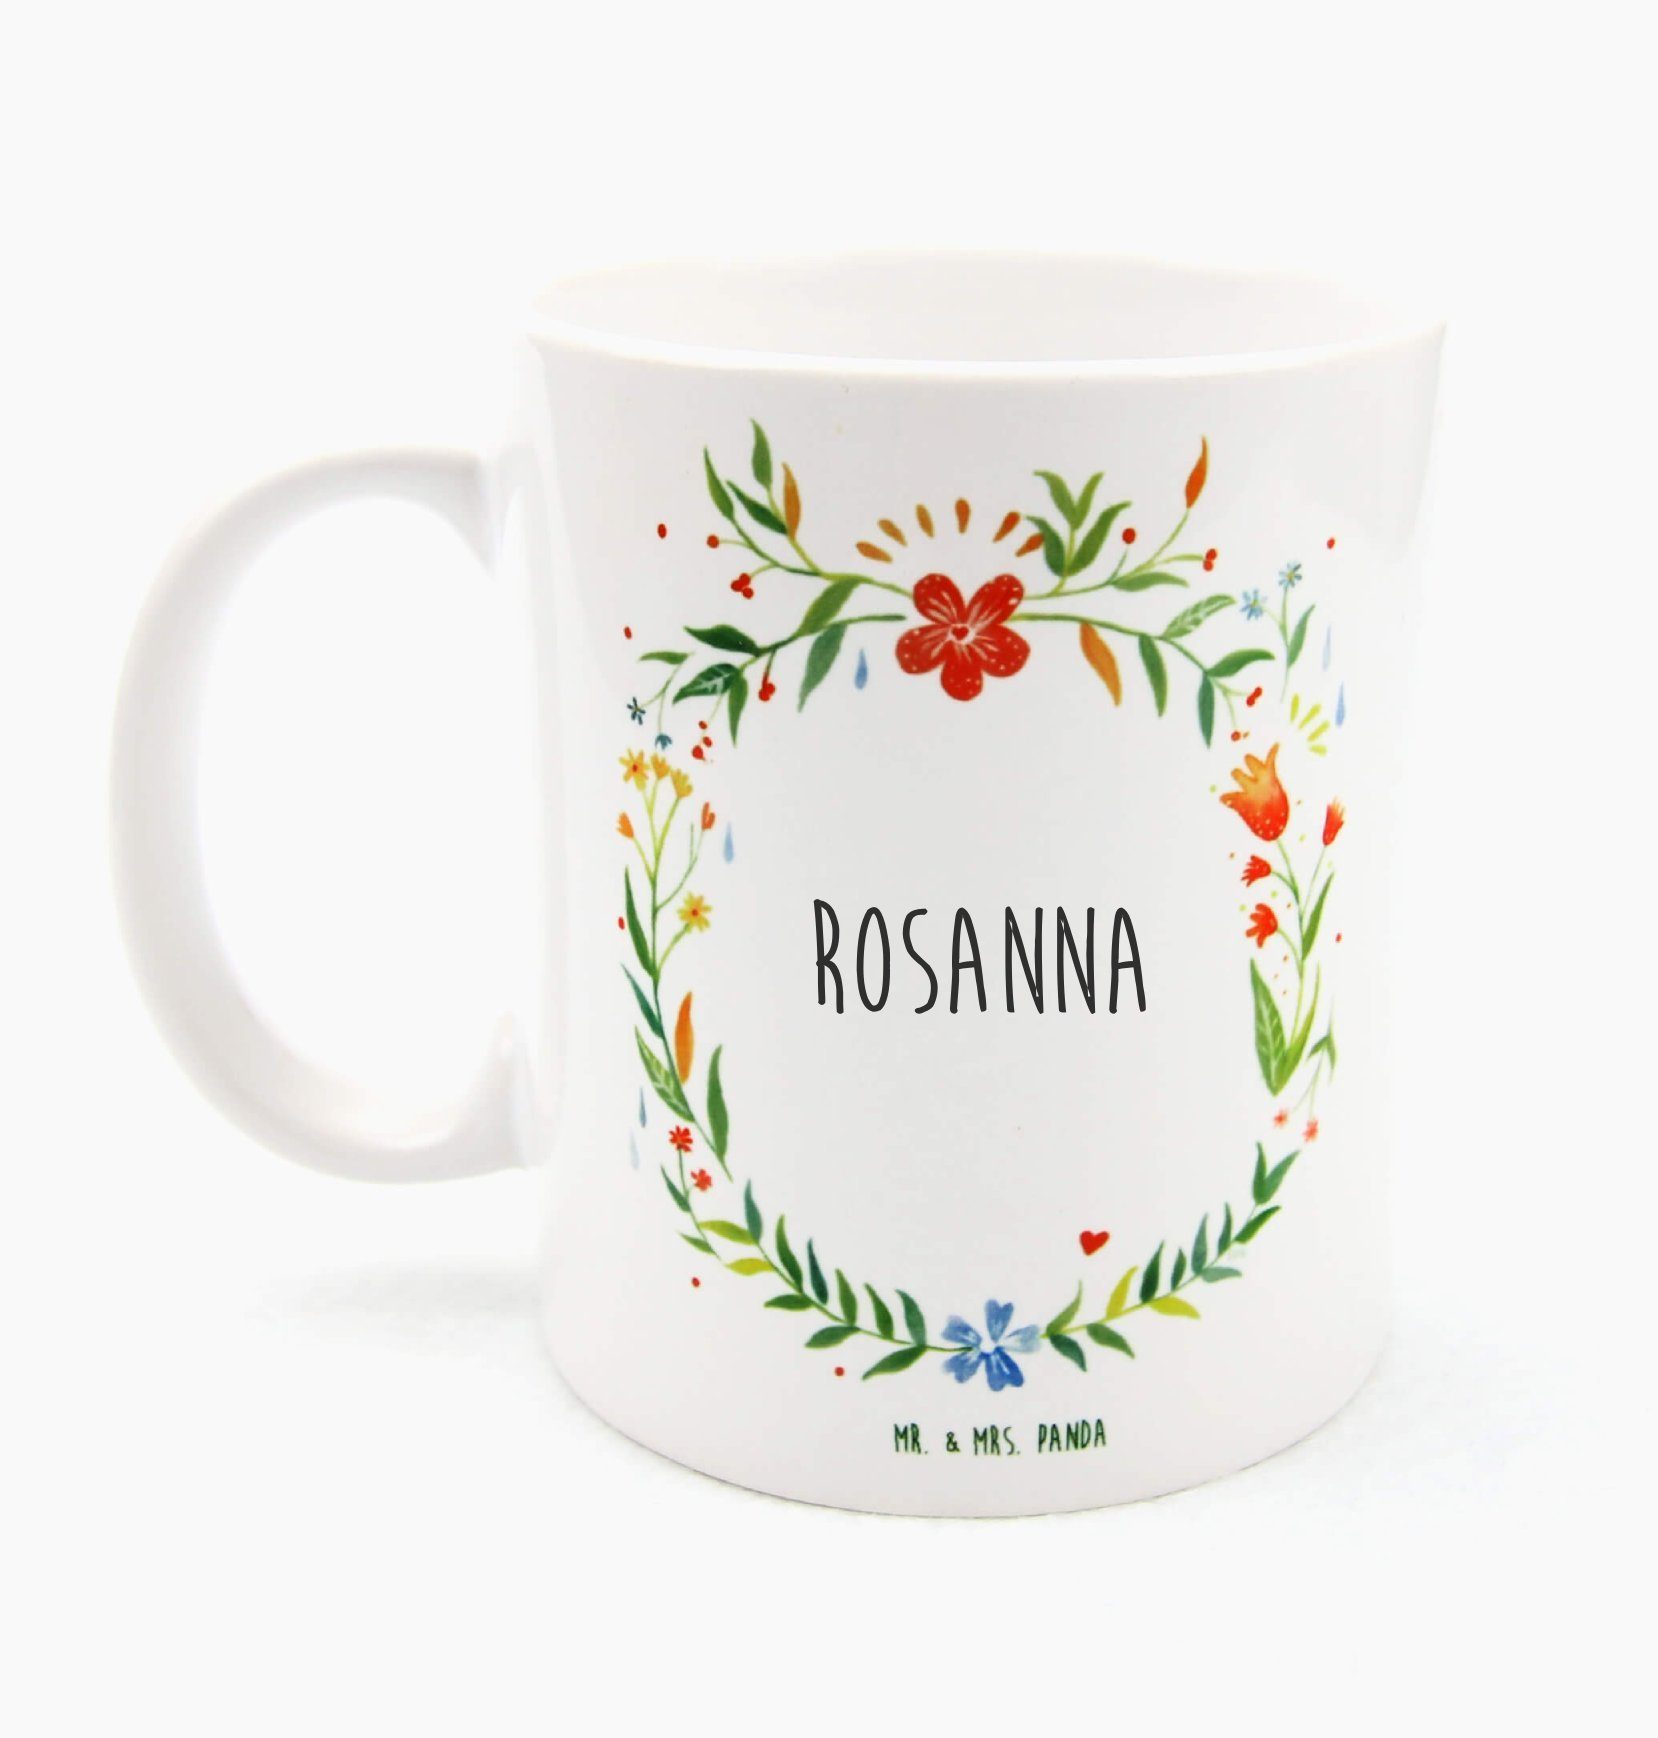 Mr. & Mrs. Panda Tasse Rosanna - Geschenk, Kaffeebecher, Teebecher, Geschenk Tasse, Keramikt, Keramik